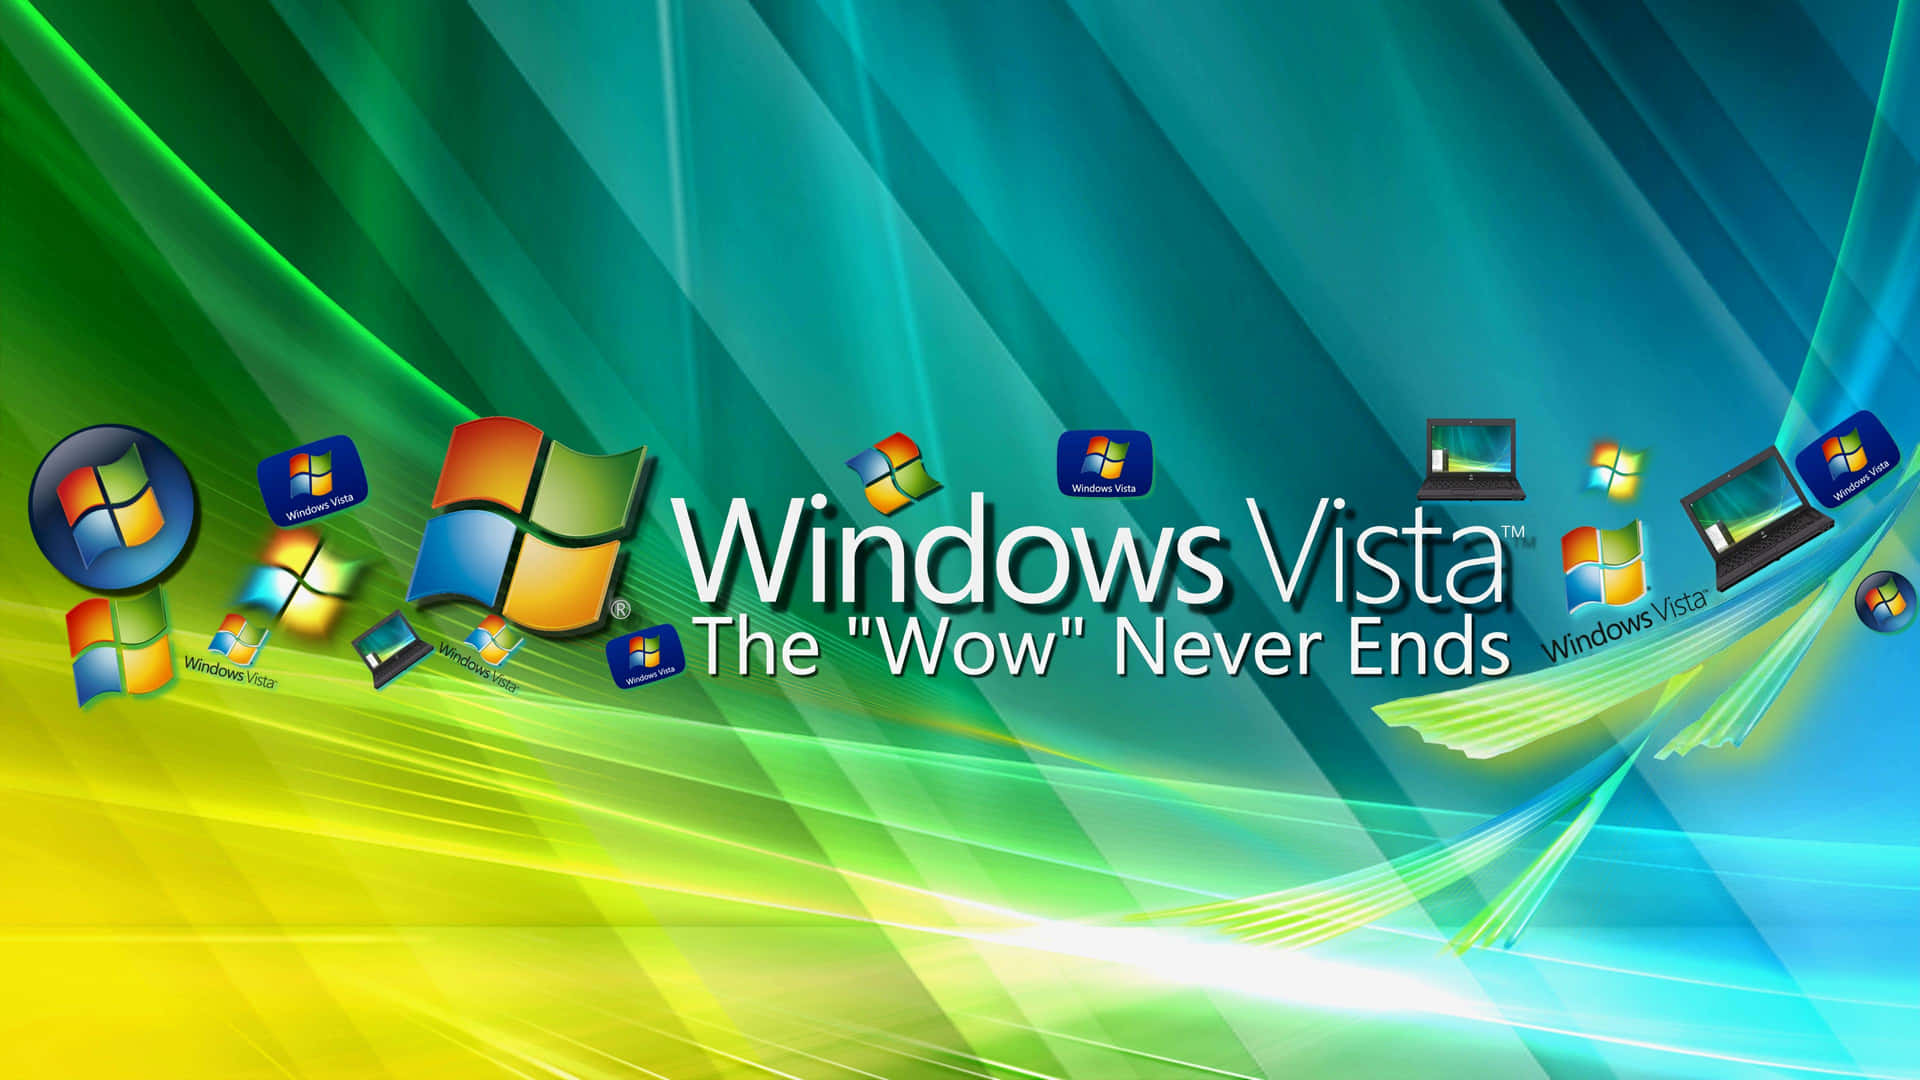 Windows Vista malerisk himmel med trækrone og runde skyer